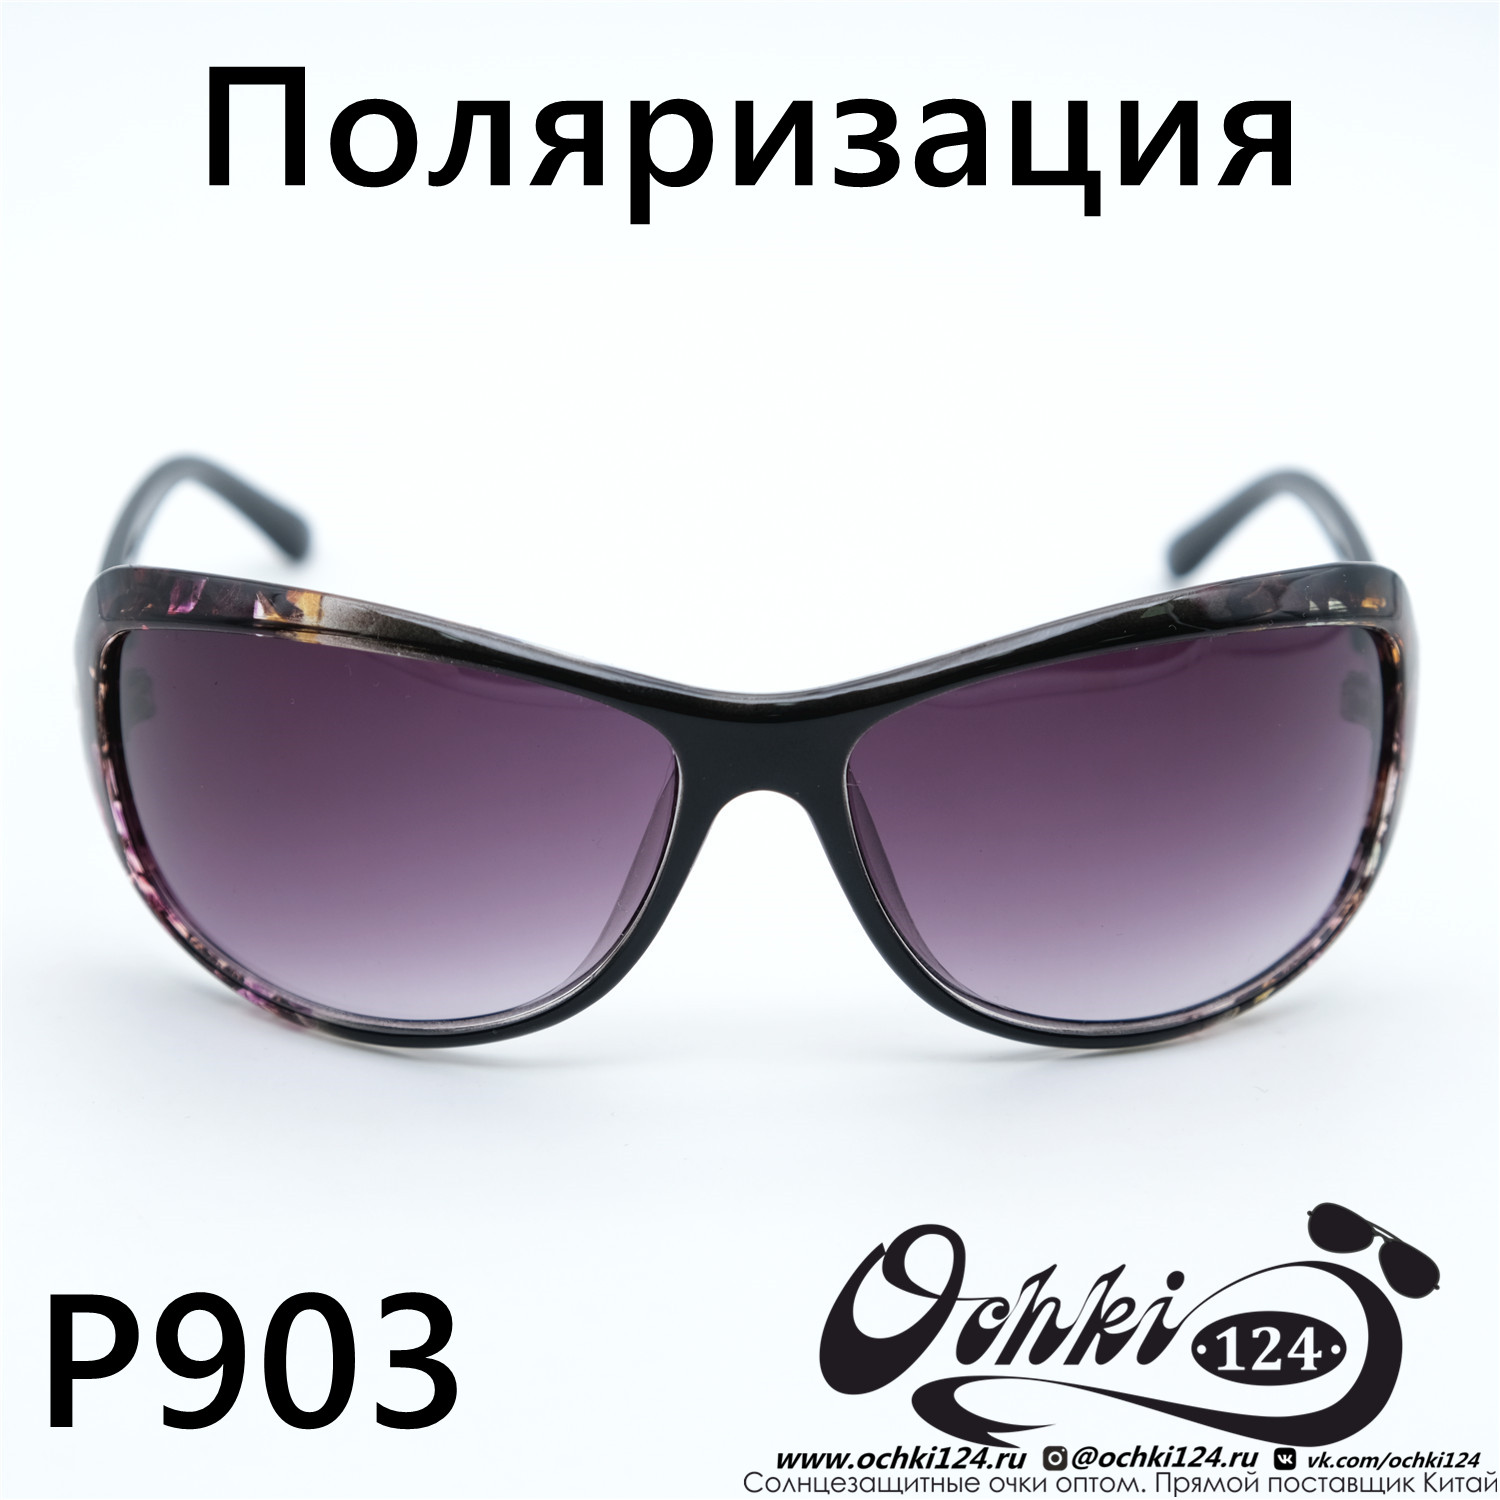  Солнцезащитные очки картинка Женские Prius Polarized Стандартные P903-C5 